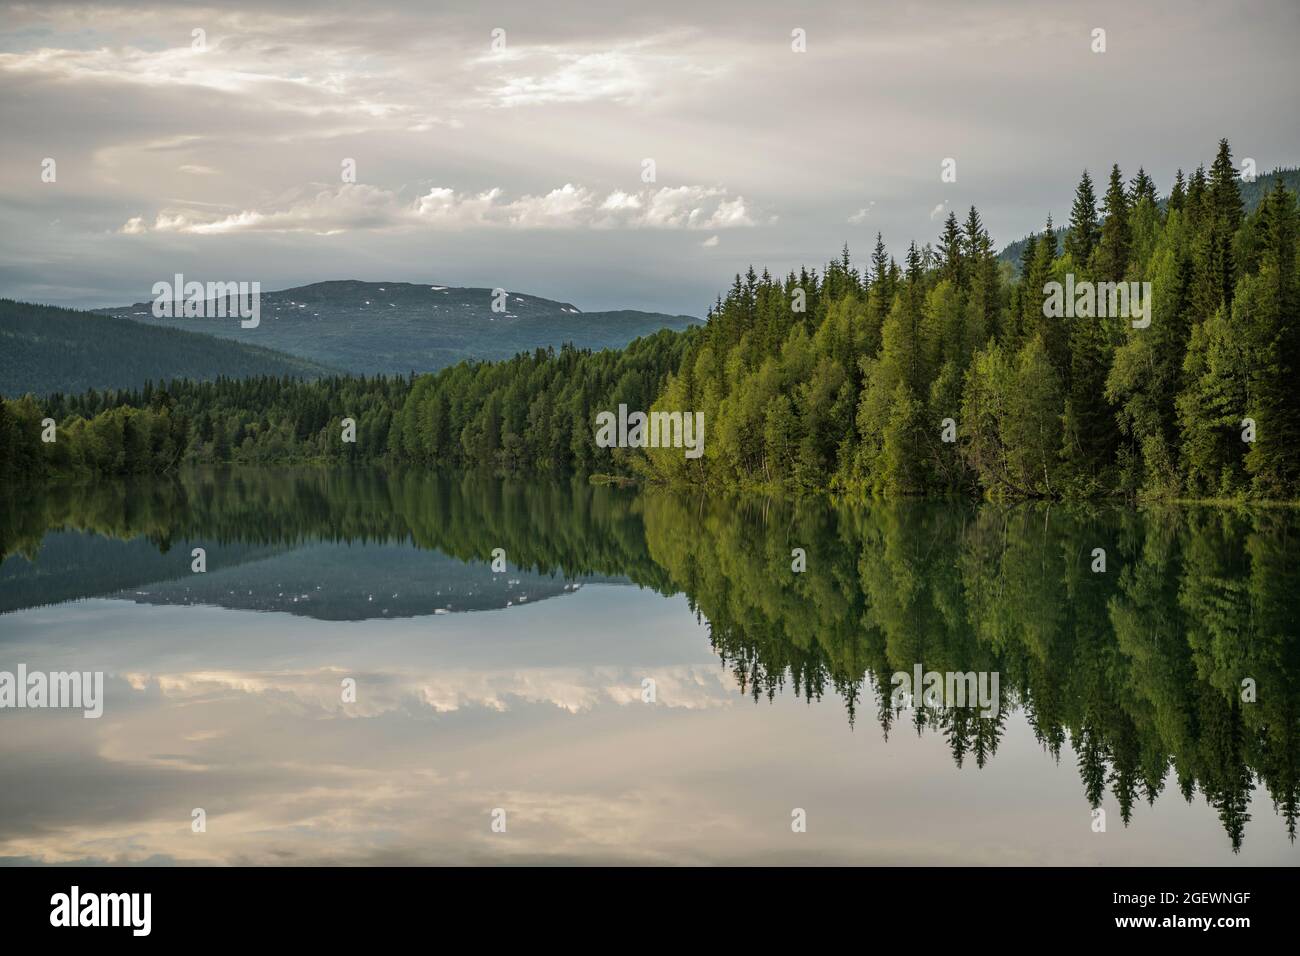 Landschaftlich Reizvolle Nordland County Norway. Calm Surface Lake, Mountains und Tree Line Reflections. Norwegische Landschaft. Stockfoto